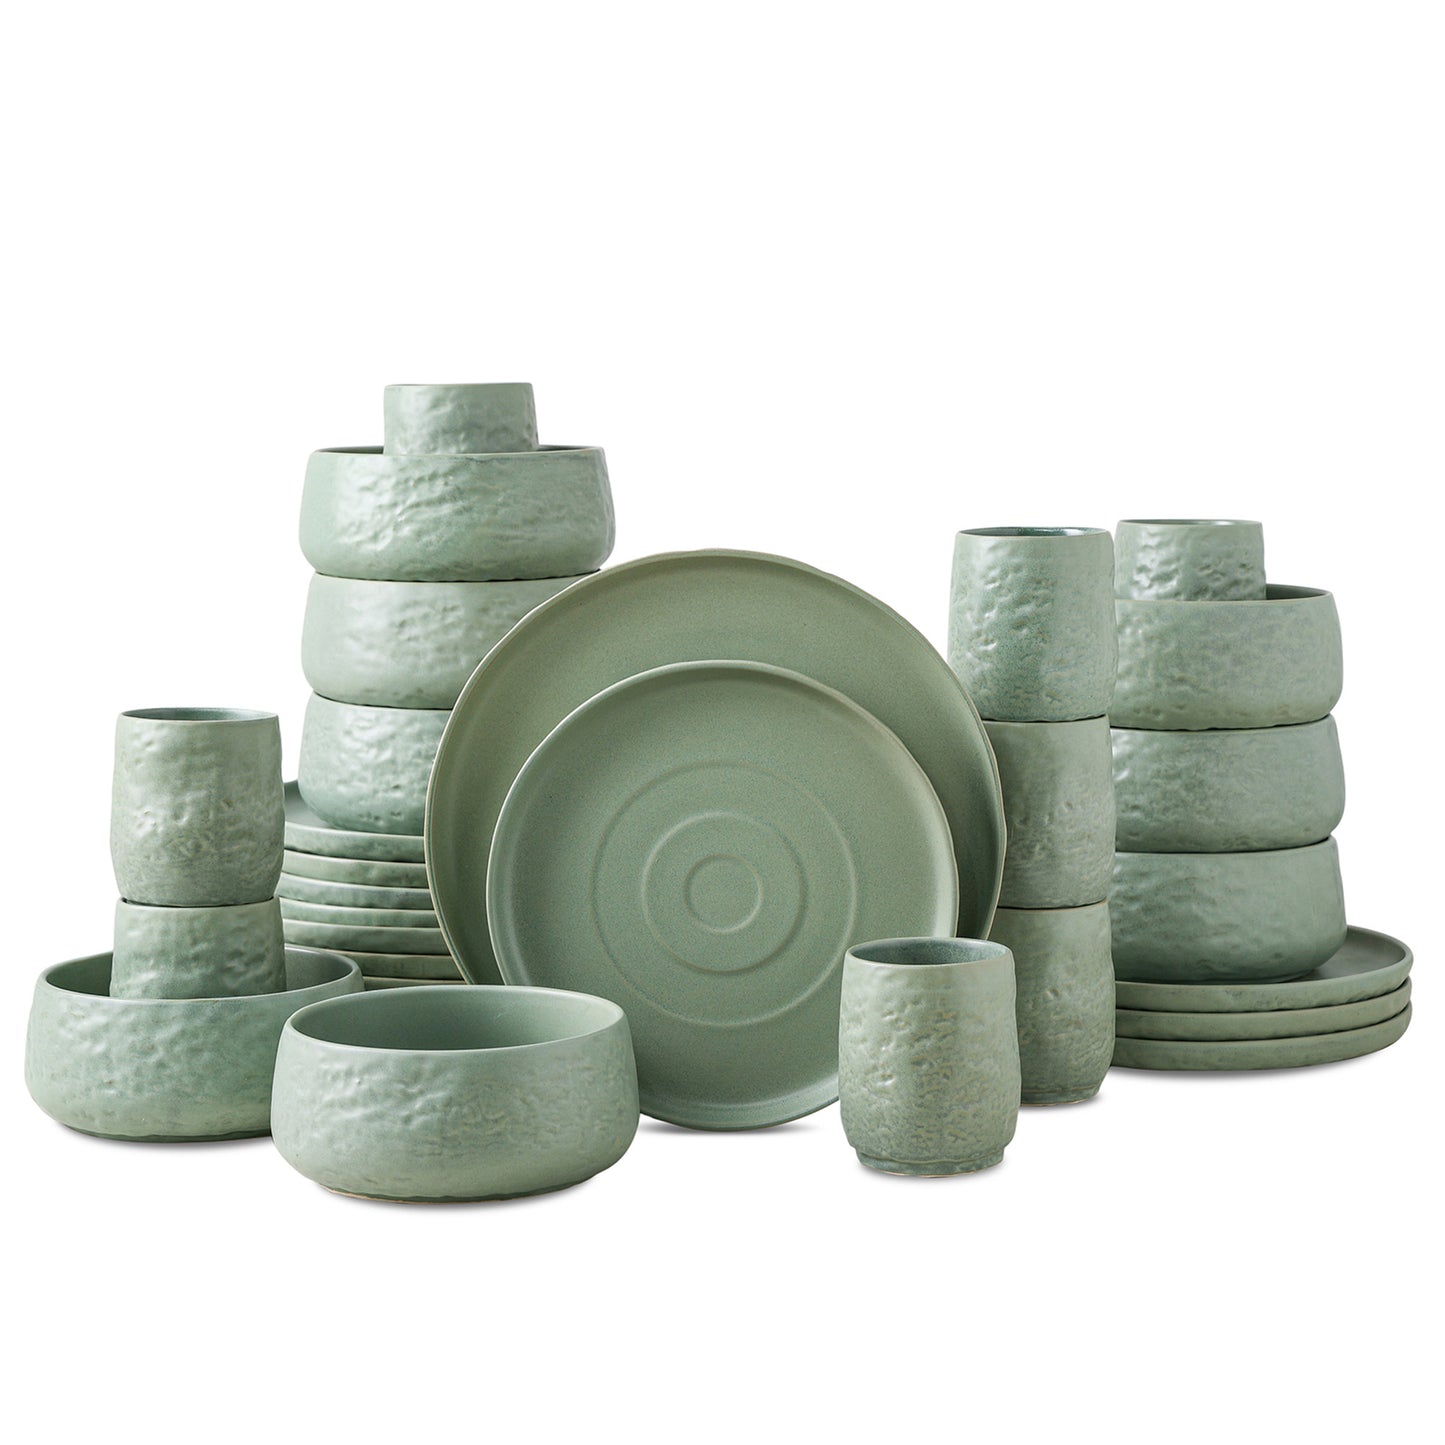 Shosai Stoneware Dinnerware Set - Sage